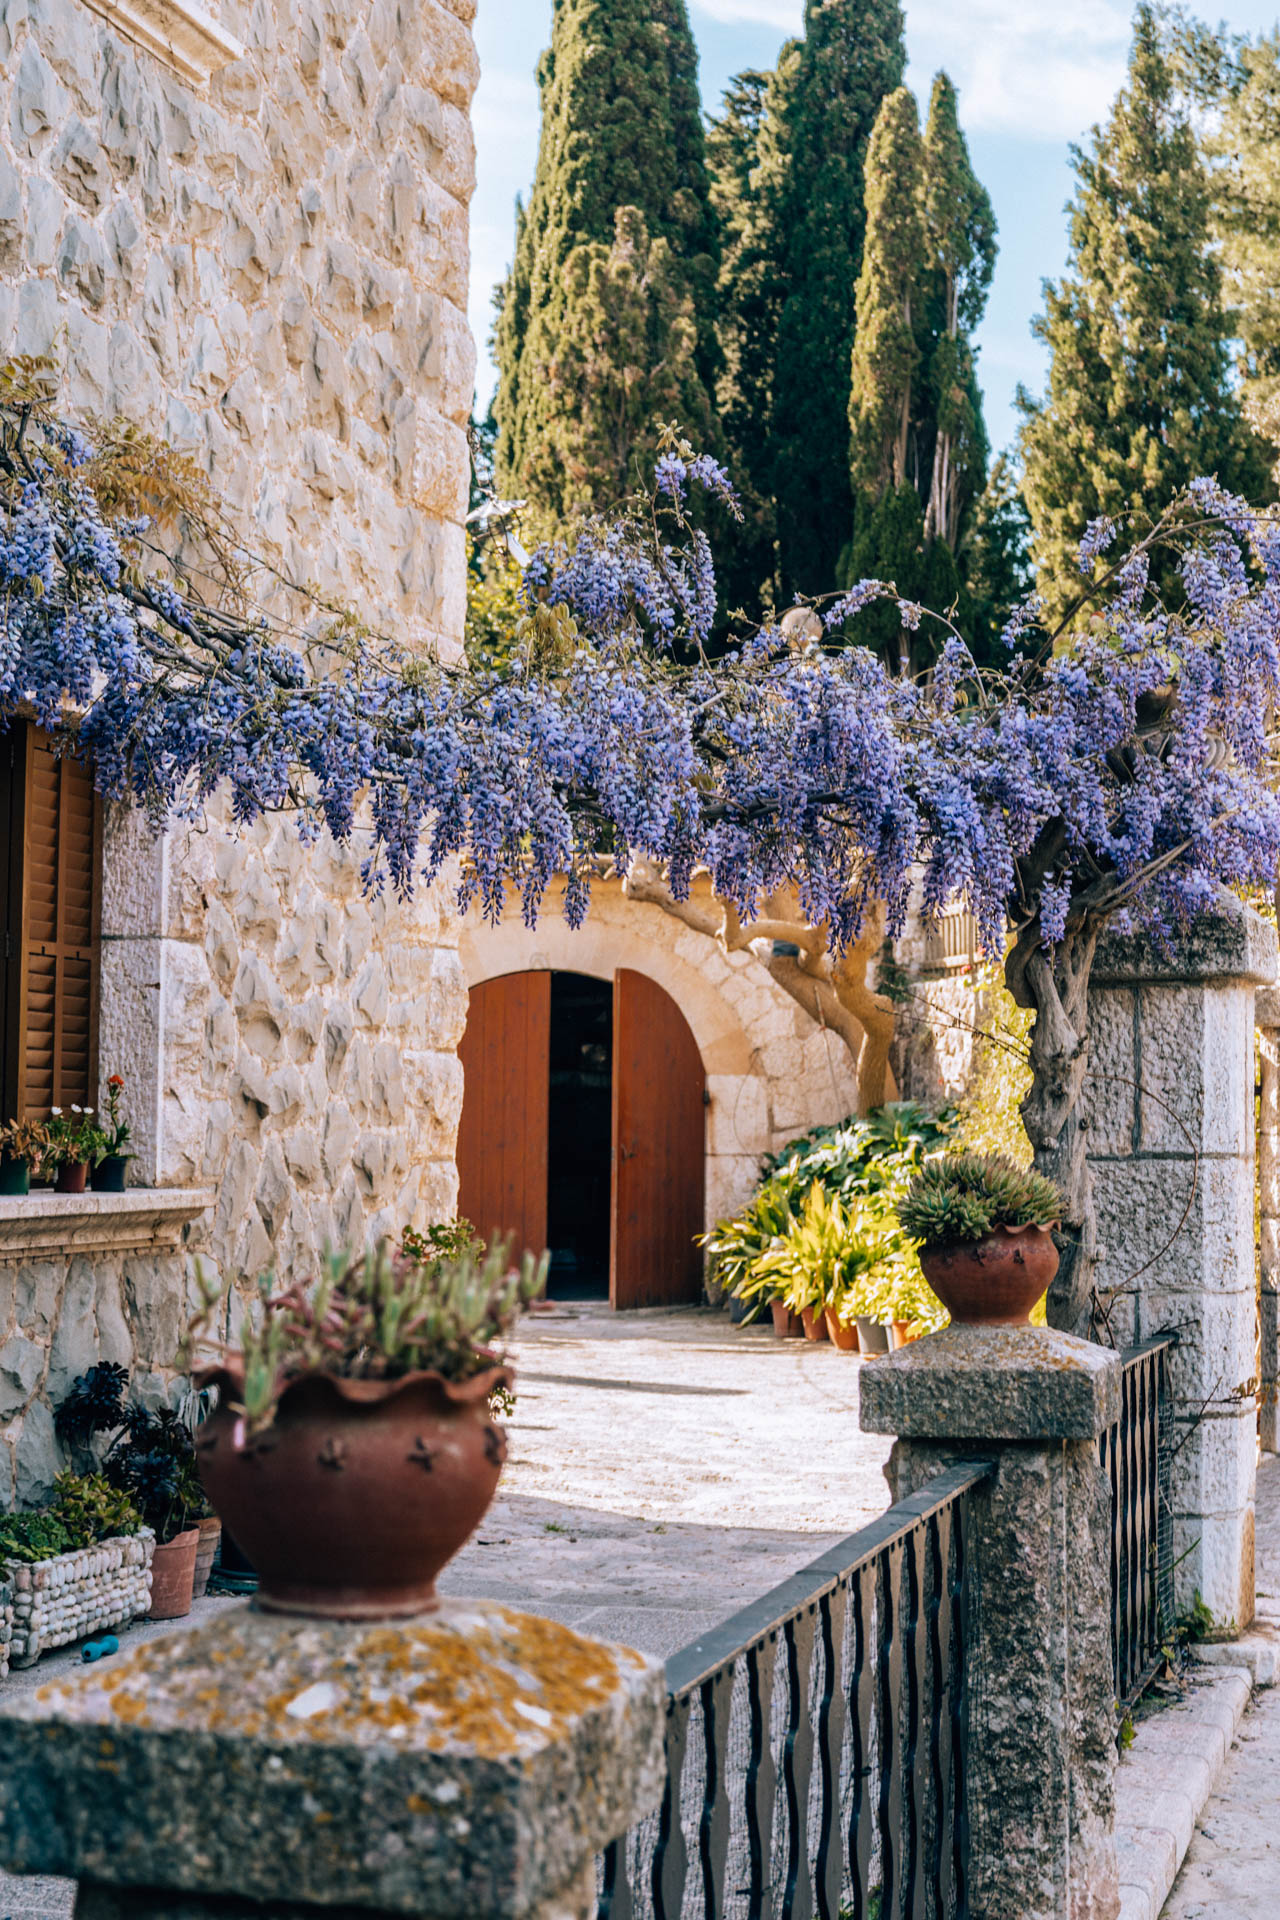 Kwitnáca fioletowa wisteria w Valldemossie | Atrakcje na Majorce